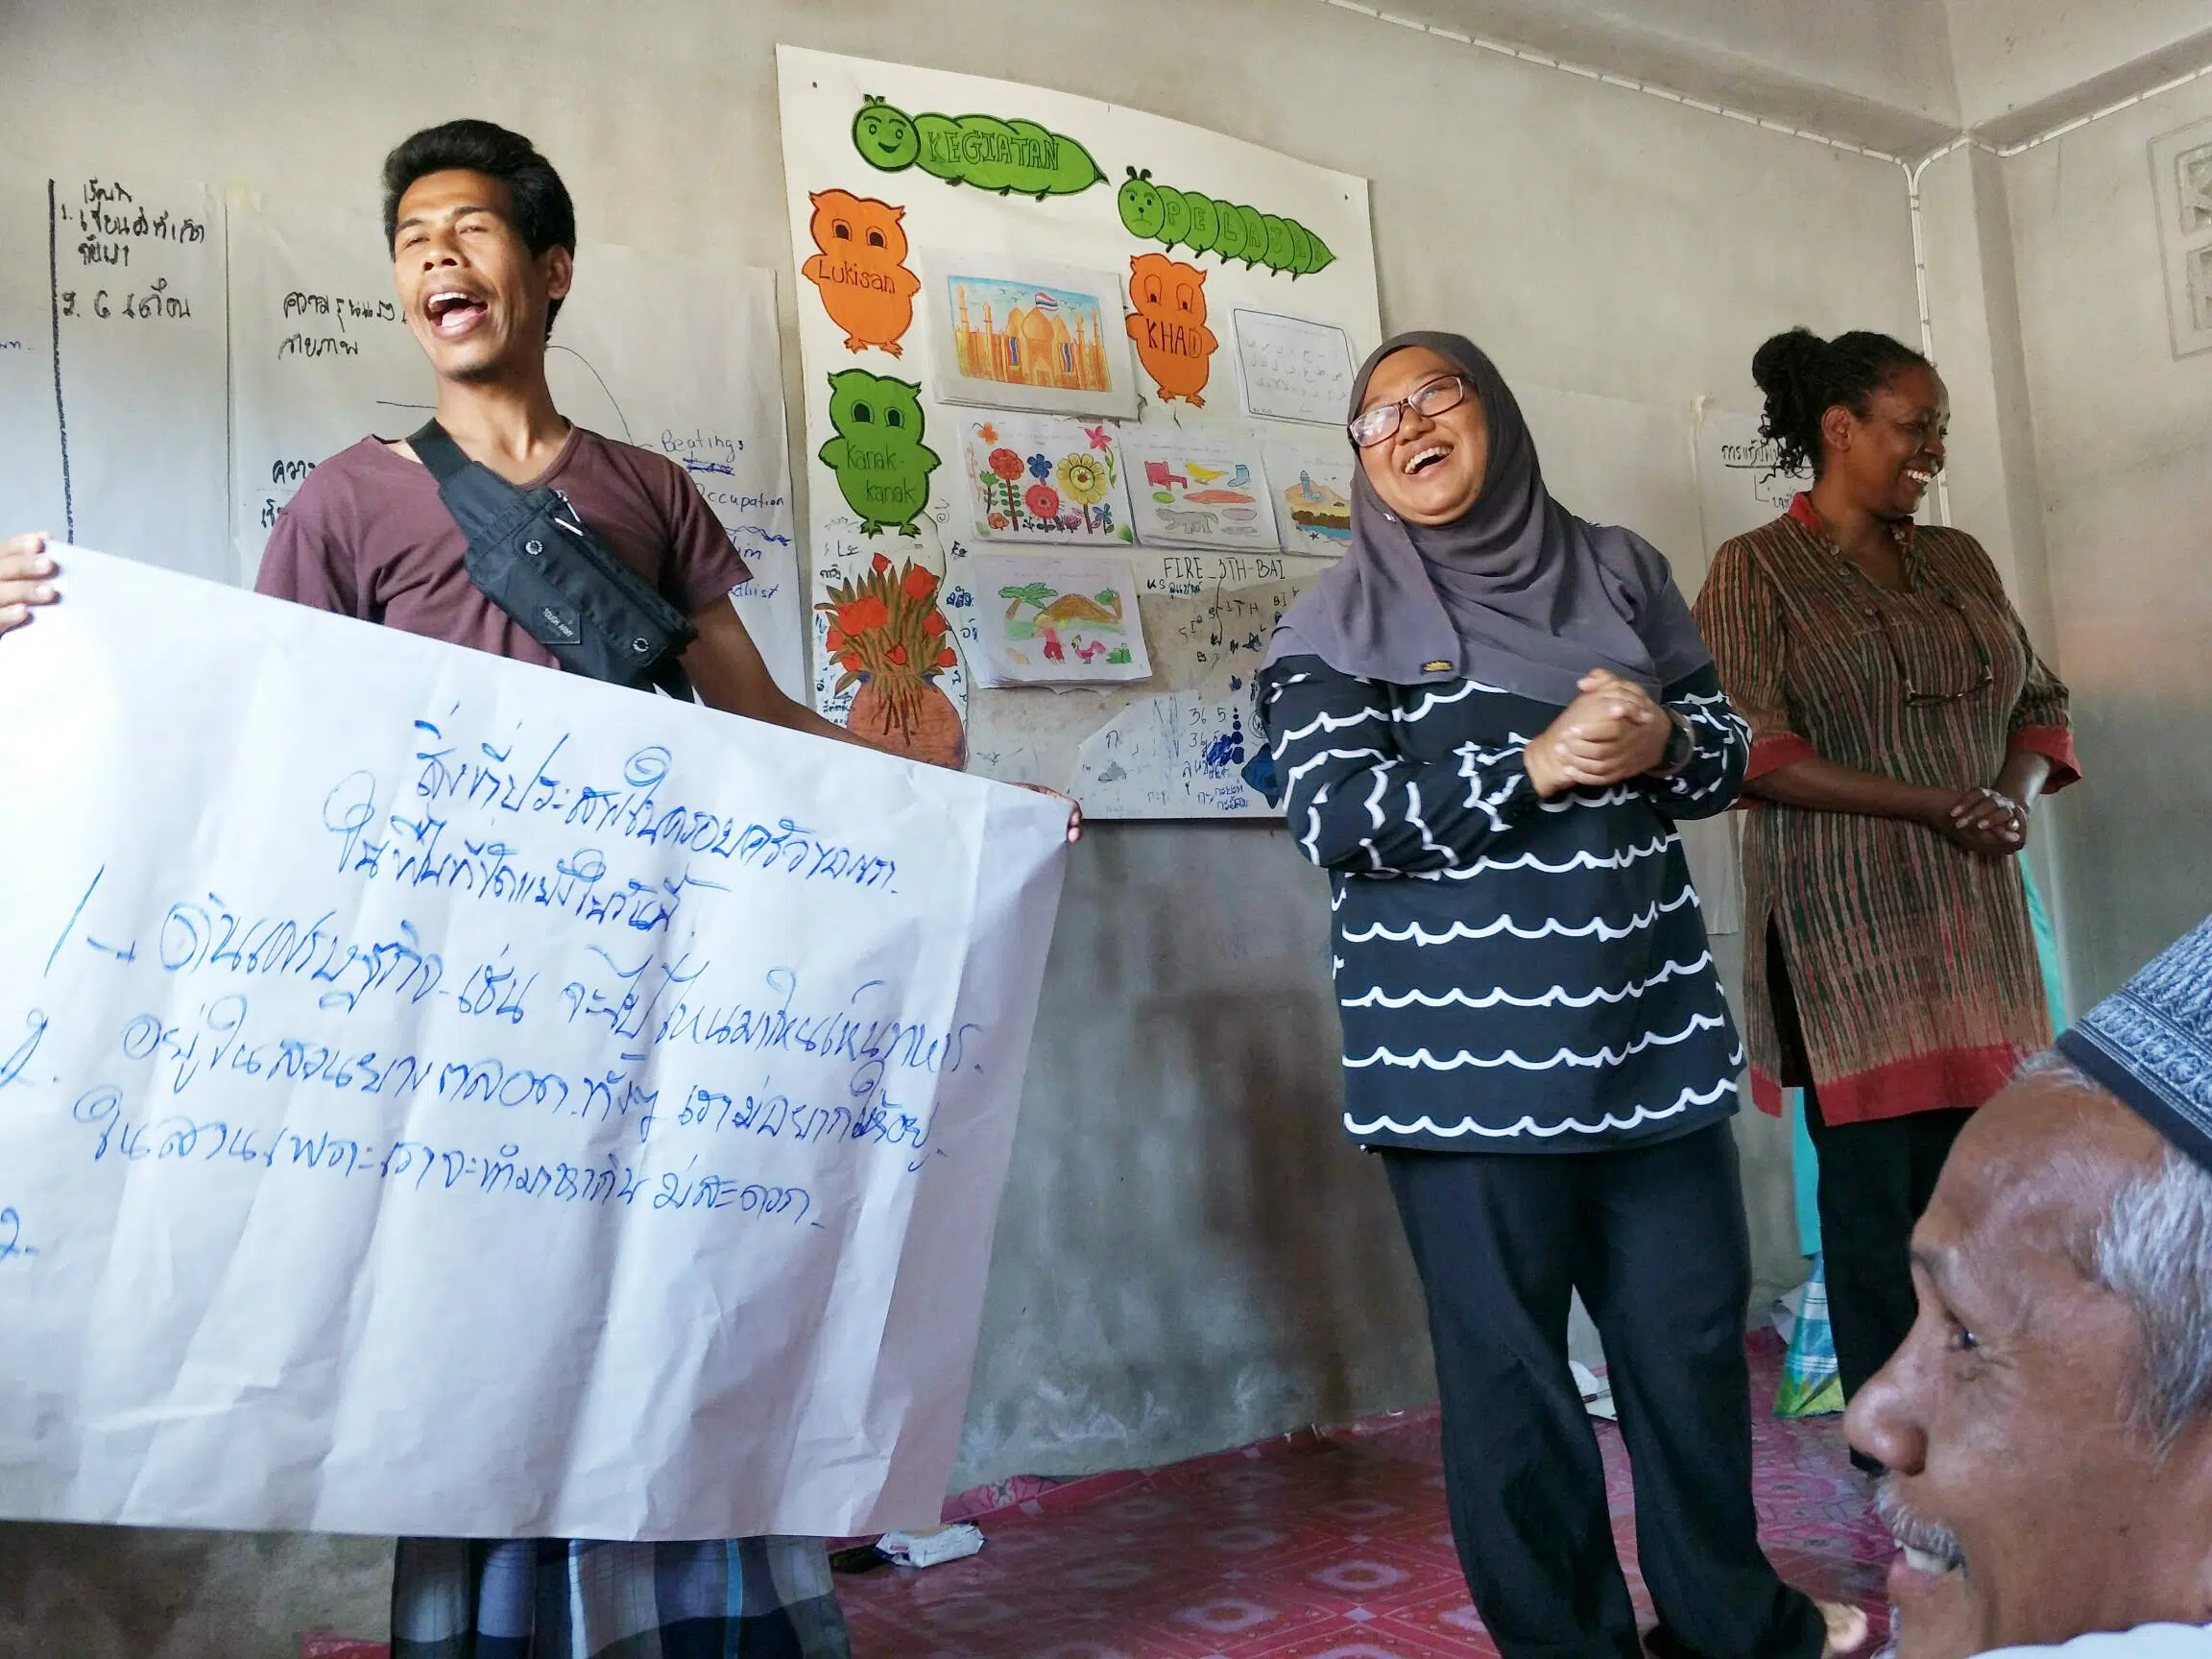 Deux personnes chantant et souriant tenant une pancarte avec des lettres thaïlandaises lors d'une formation dans le sud de la Thaïlande. Le personnel de NP souriant à côté de deux personnes.